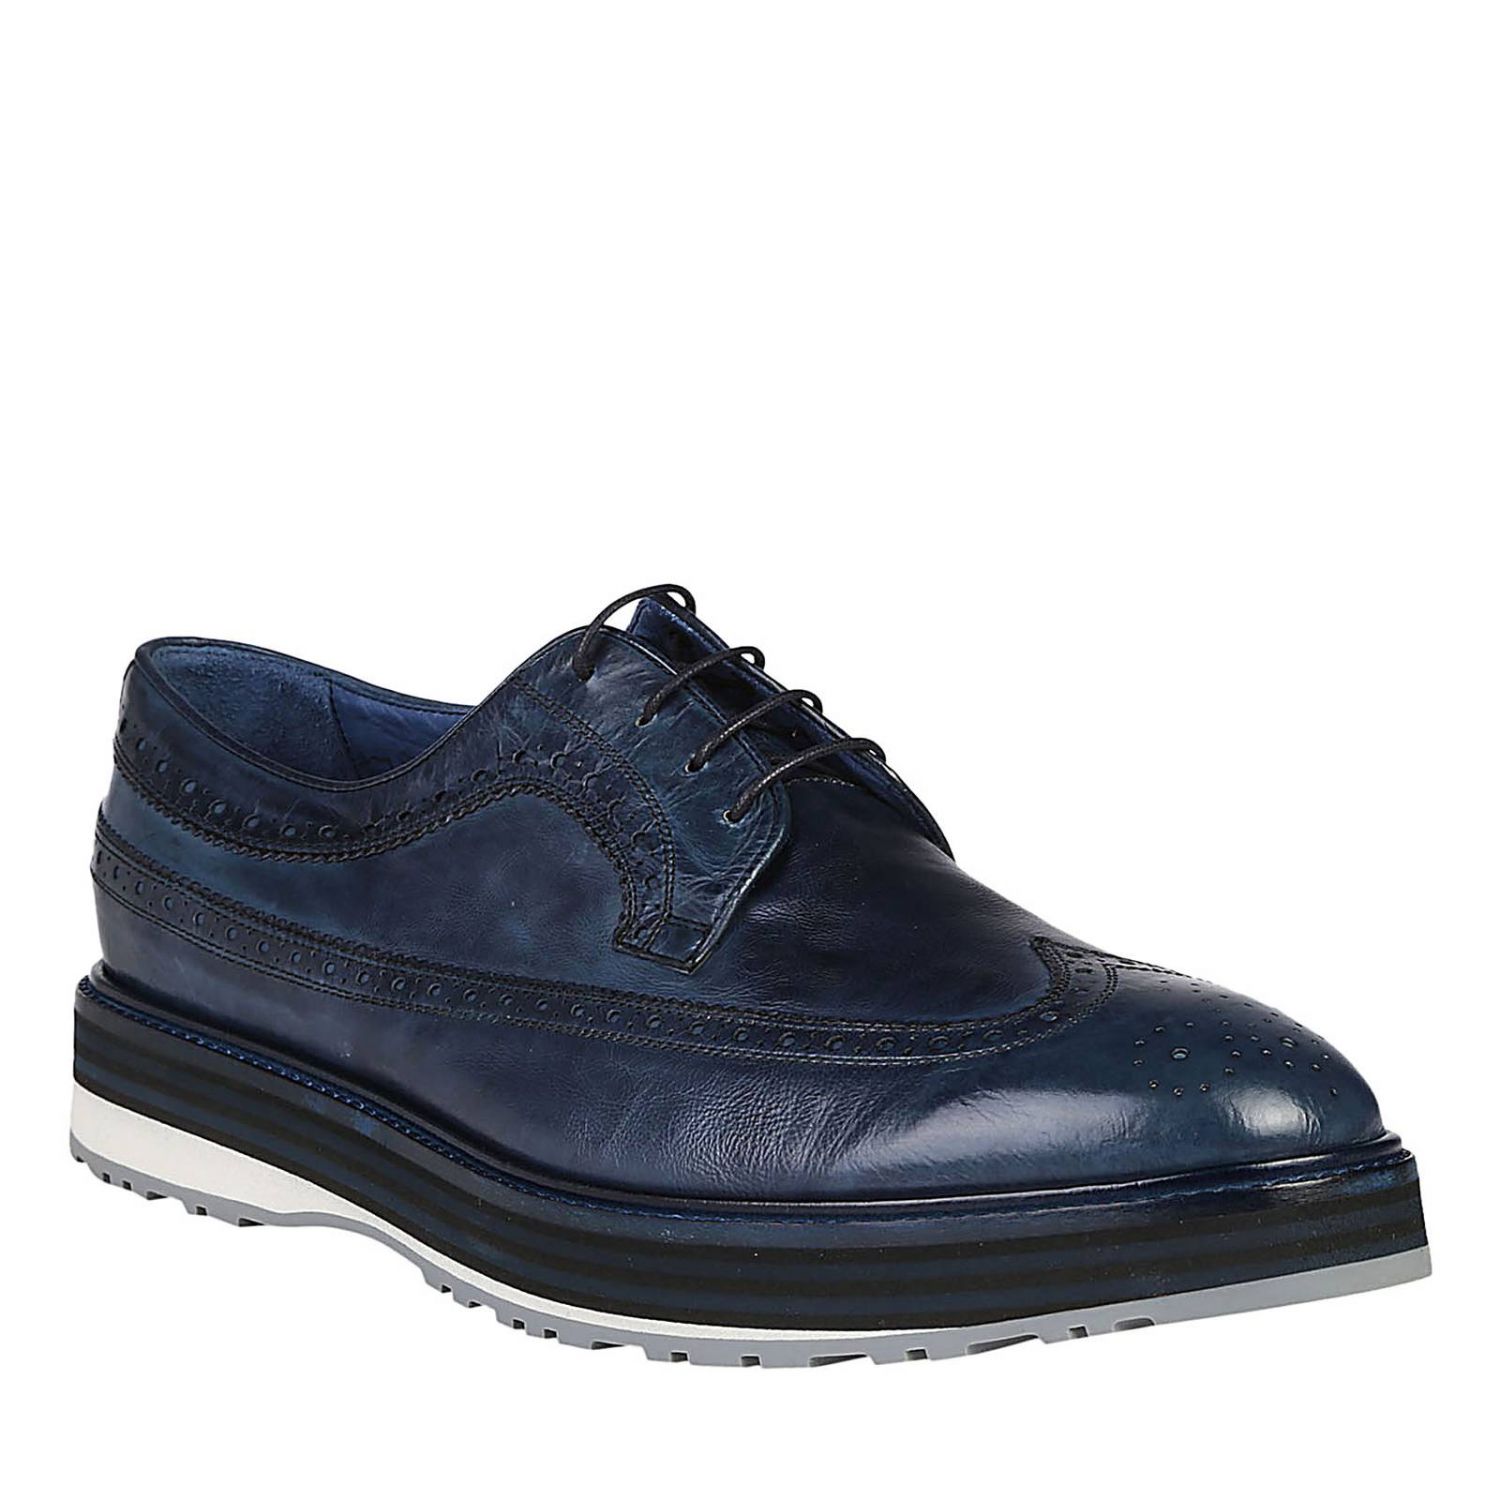 Paul Smith Outlet: Shoes men London | Brogue Shoes Paul Smith Men Blue ...